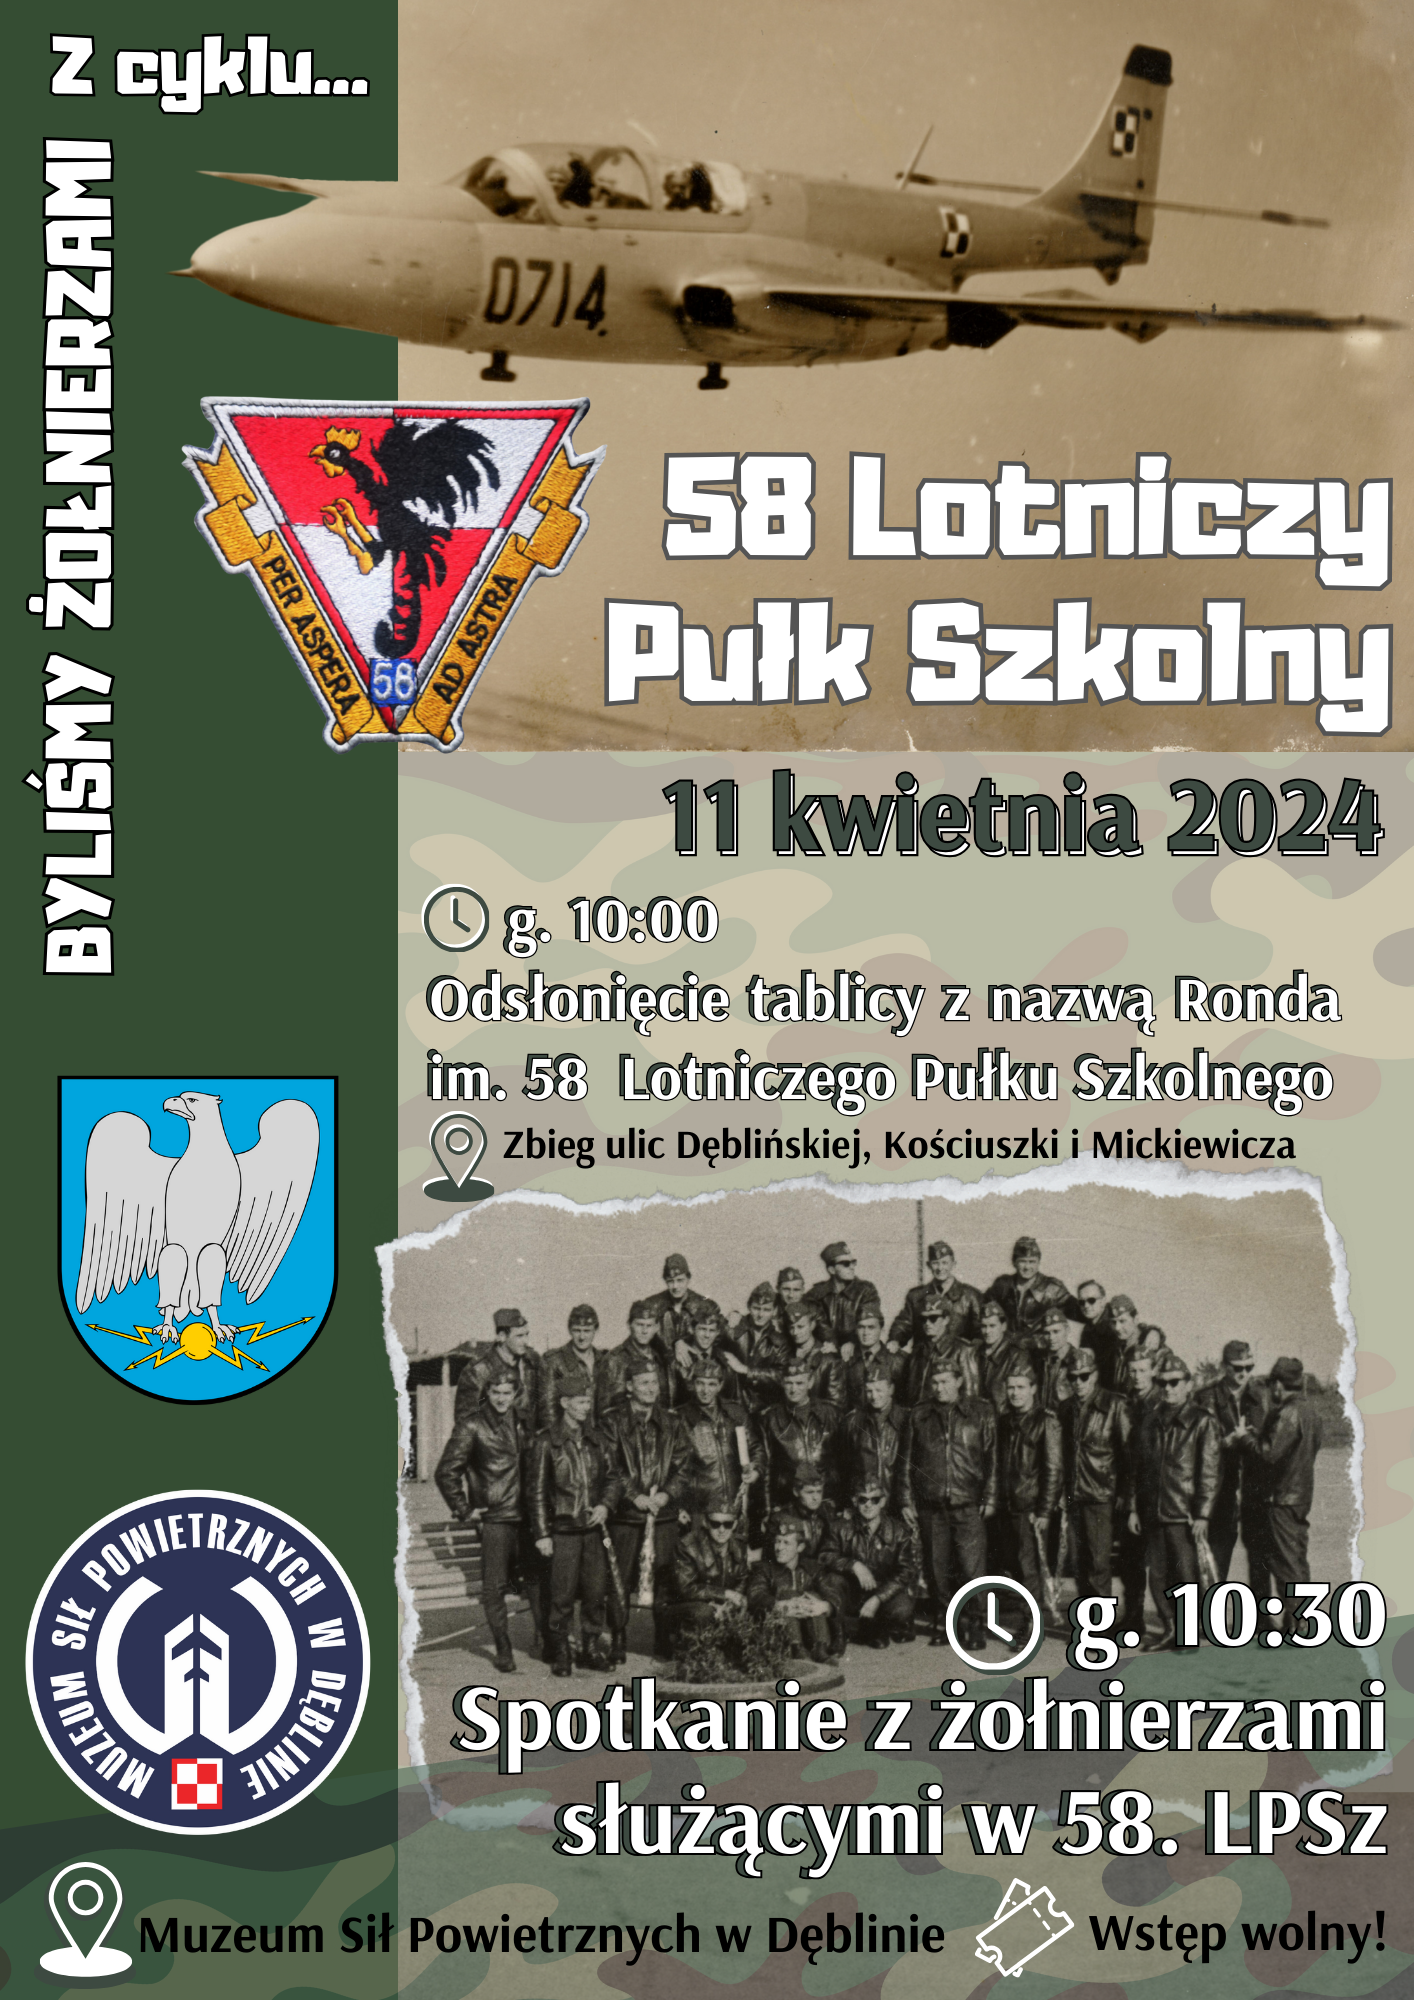 Plakat zapraszający na spotkanie z żołnierzami służącymi w pięćdziesiątym ósmym lotniczym pułku szkolnym